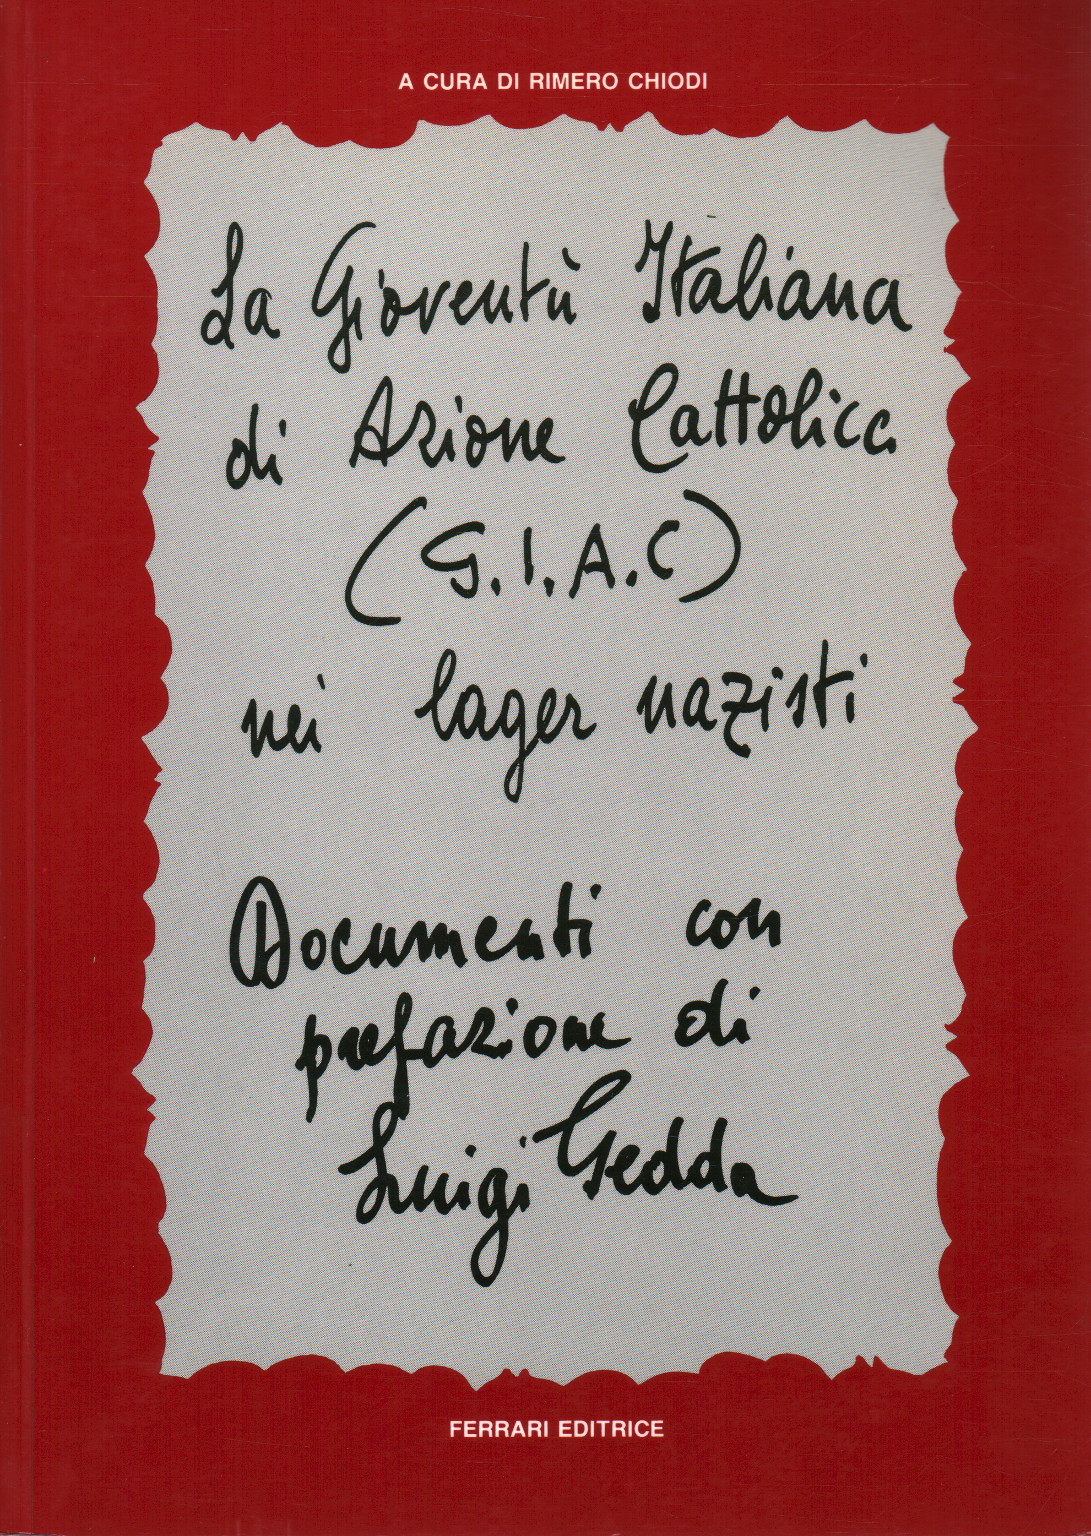 G.I.A.C. La gioventù italiana di Azione cattolica, s.a.